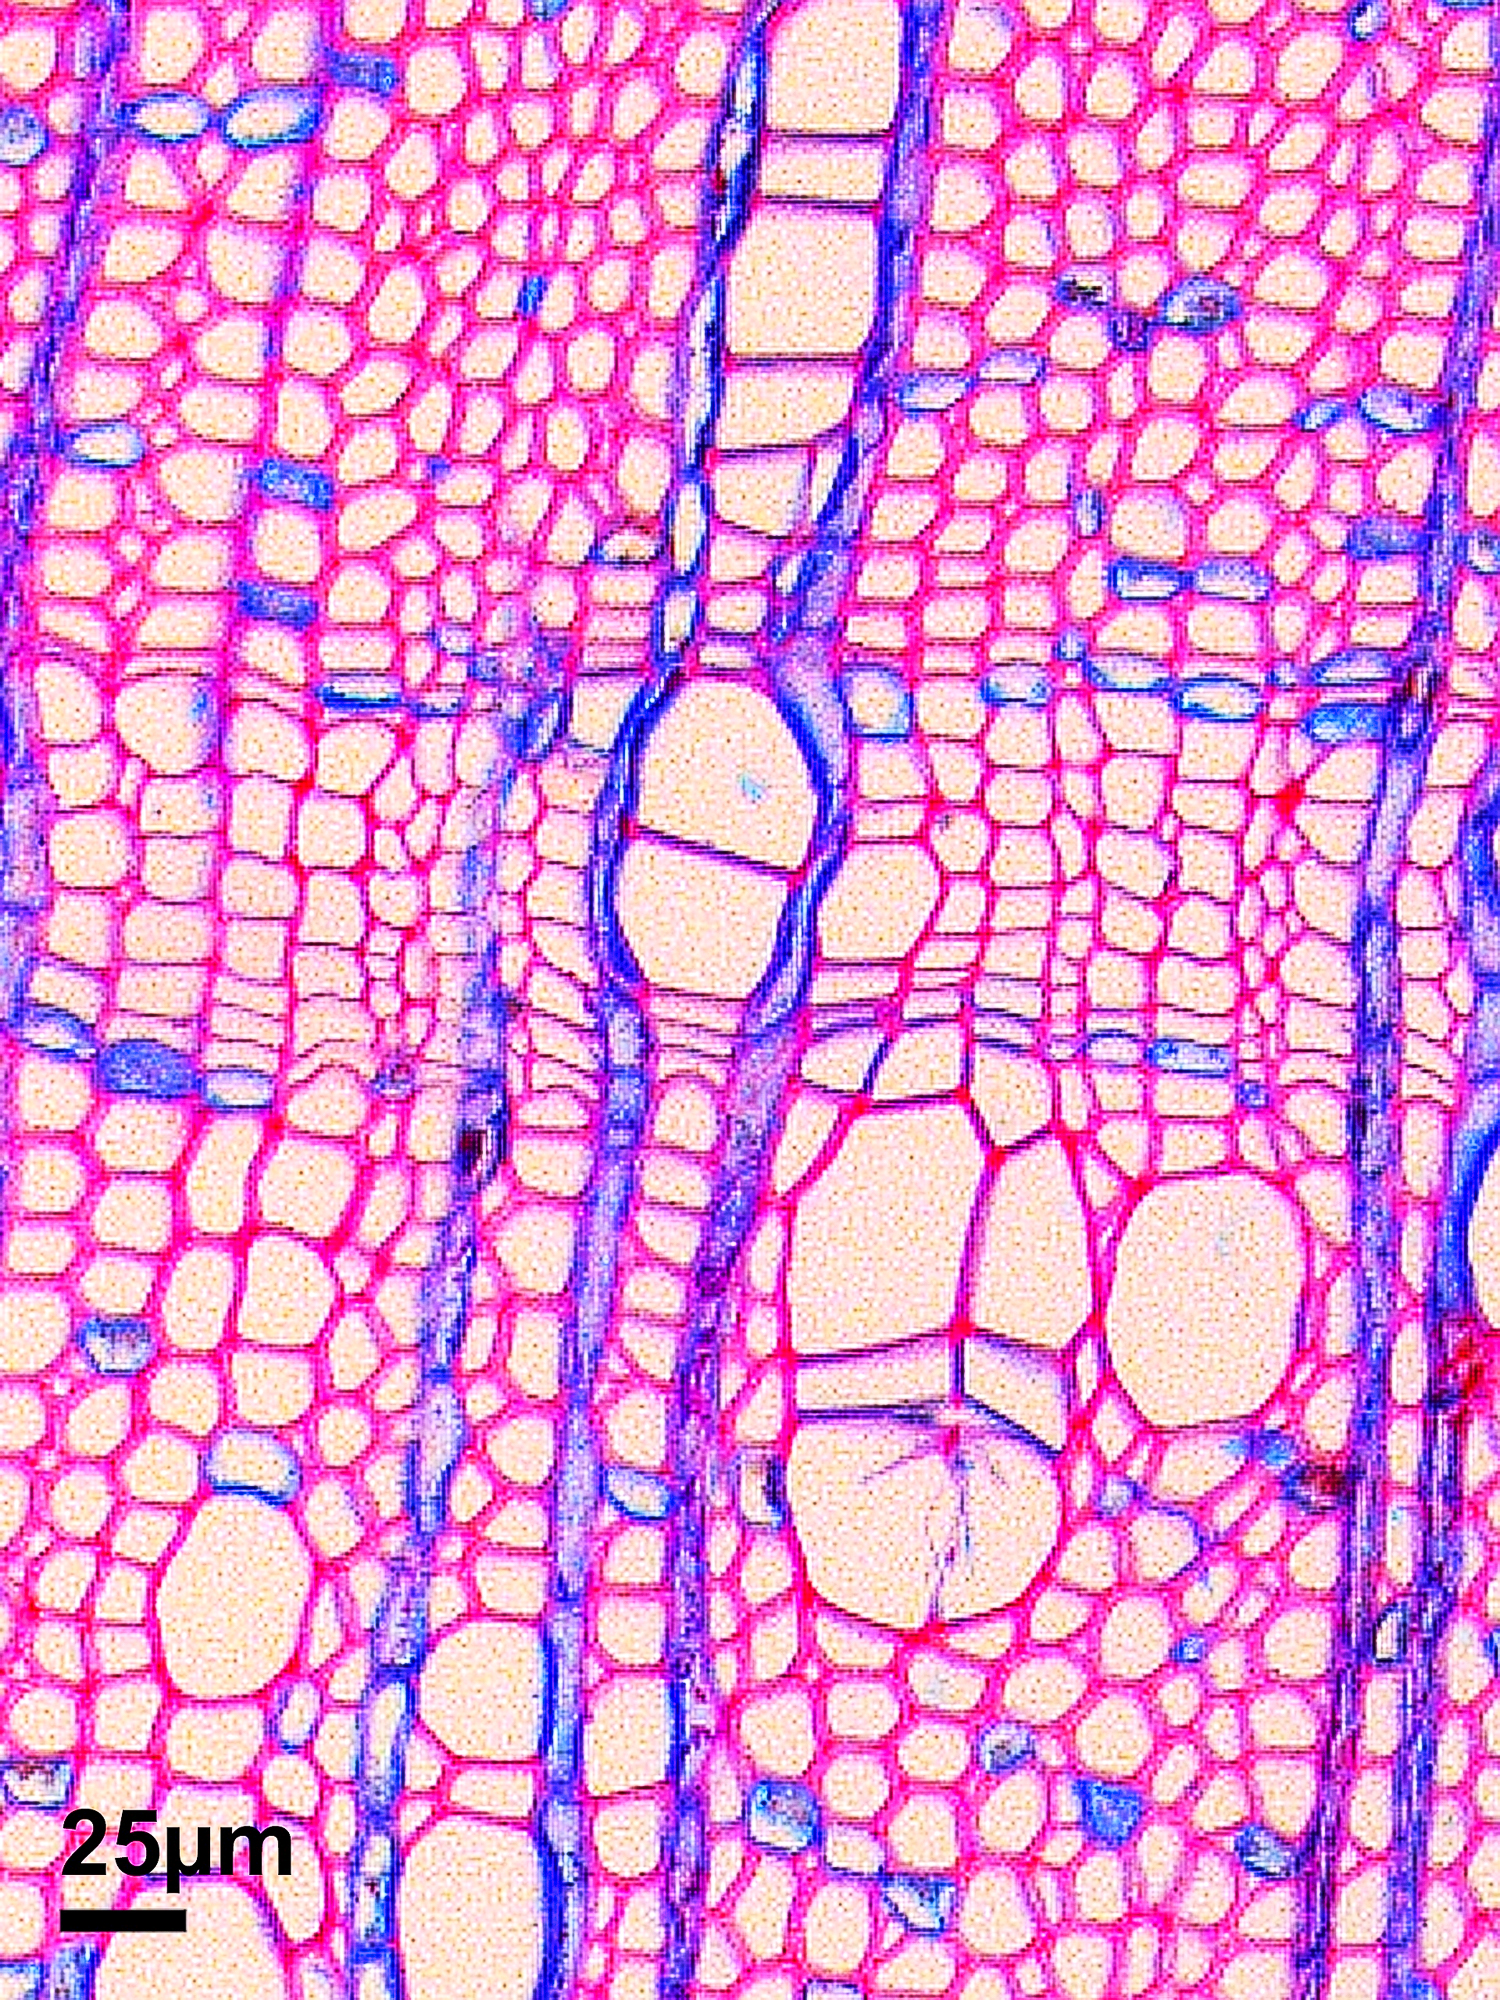 Dünnschnitt einer arktischen Erle. Nur sechs Zellen bilden das dünne Band in der Mitte, den Jahrring 2004, das Jahr einer Motteninvasion. – Foto: Jelena Lange